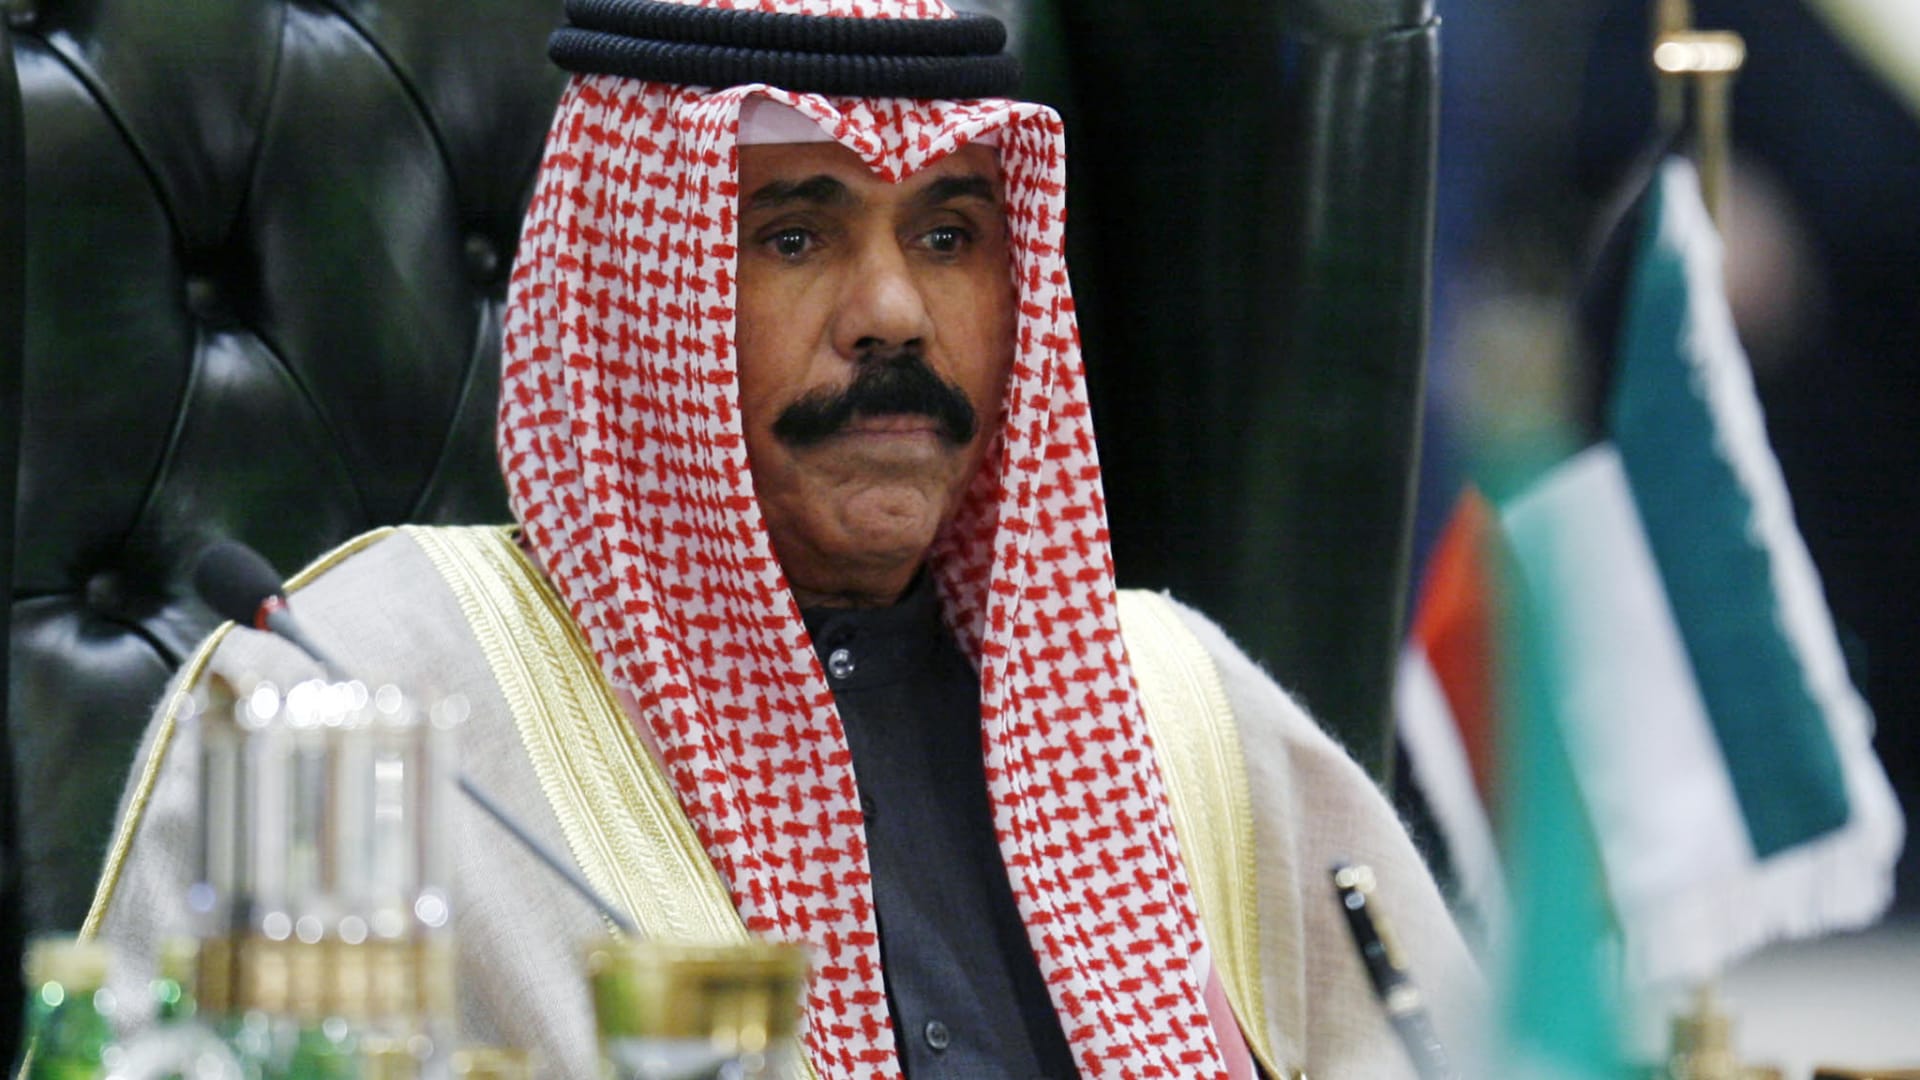 أمير الكويت يؤكد للرئيس التركي استنكار بلاده وإدانتها للهجوم الإرهابي